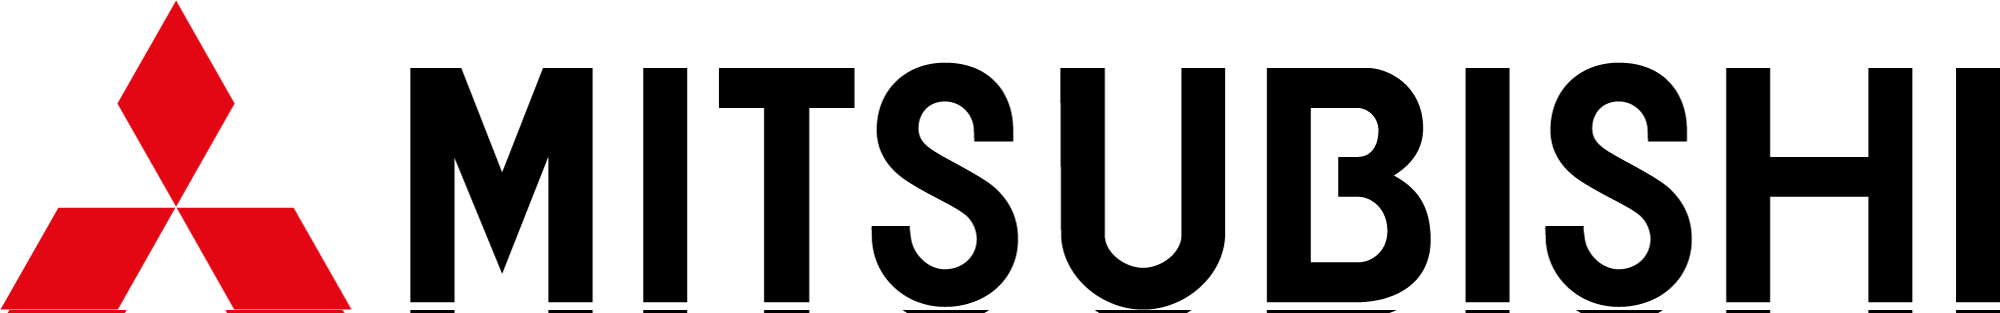 mitsubishi-png-logo